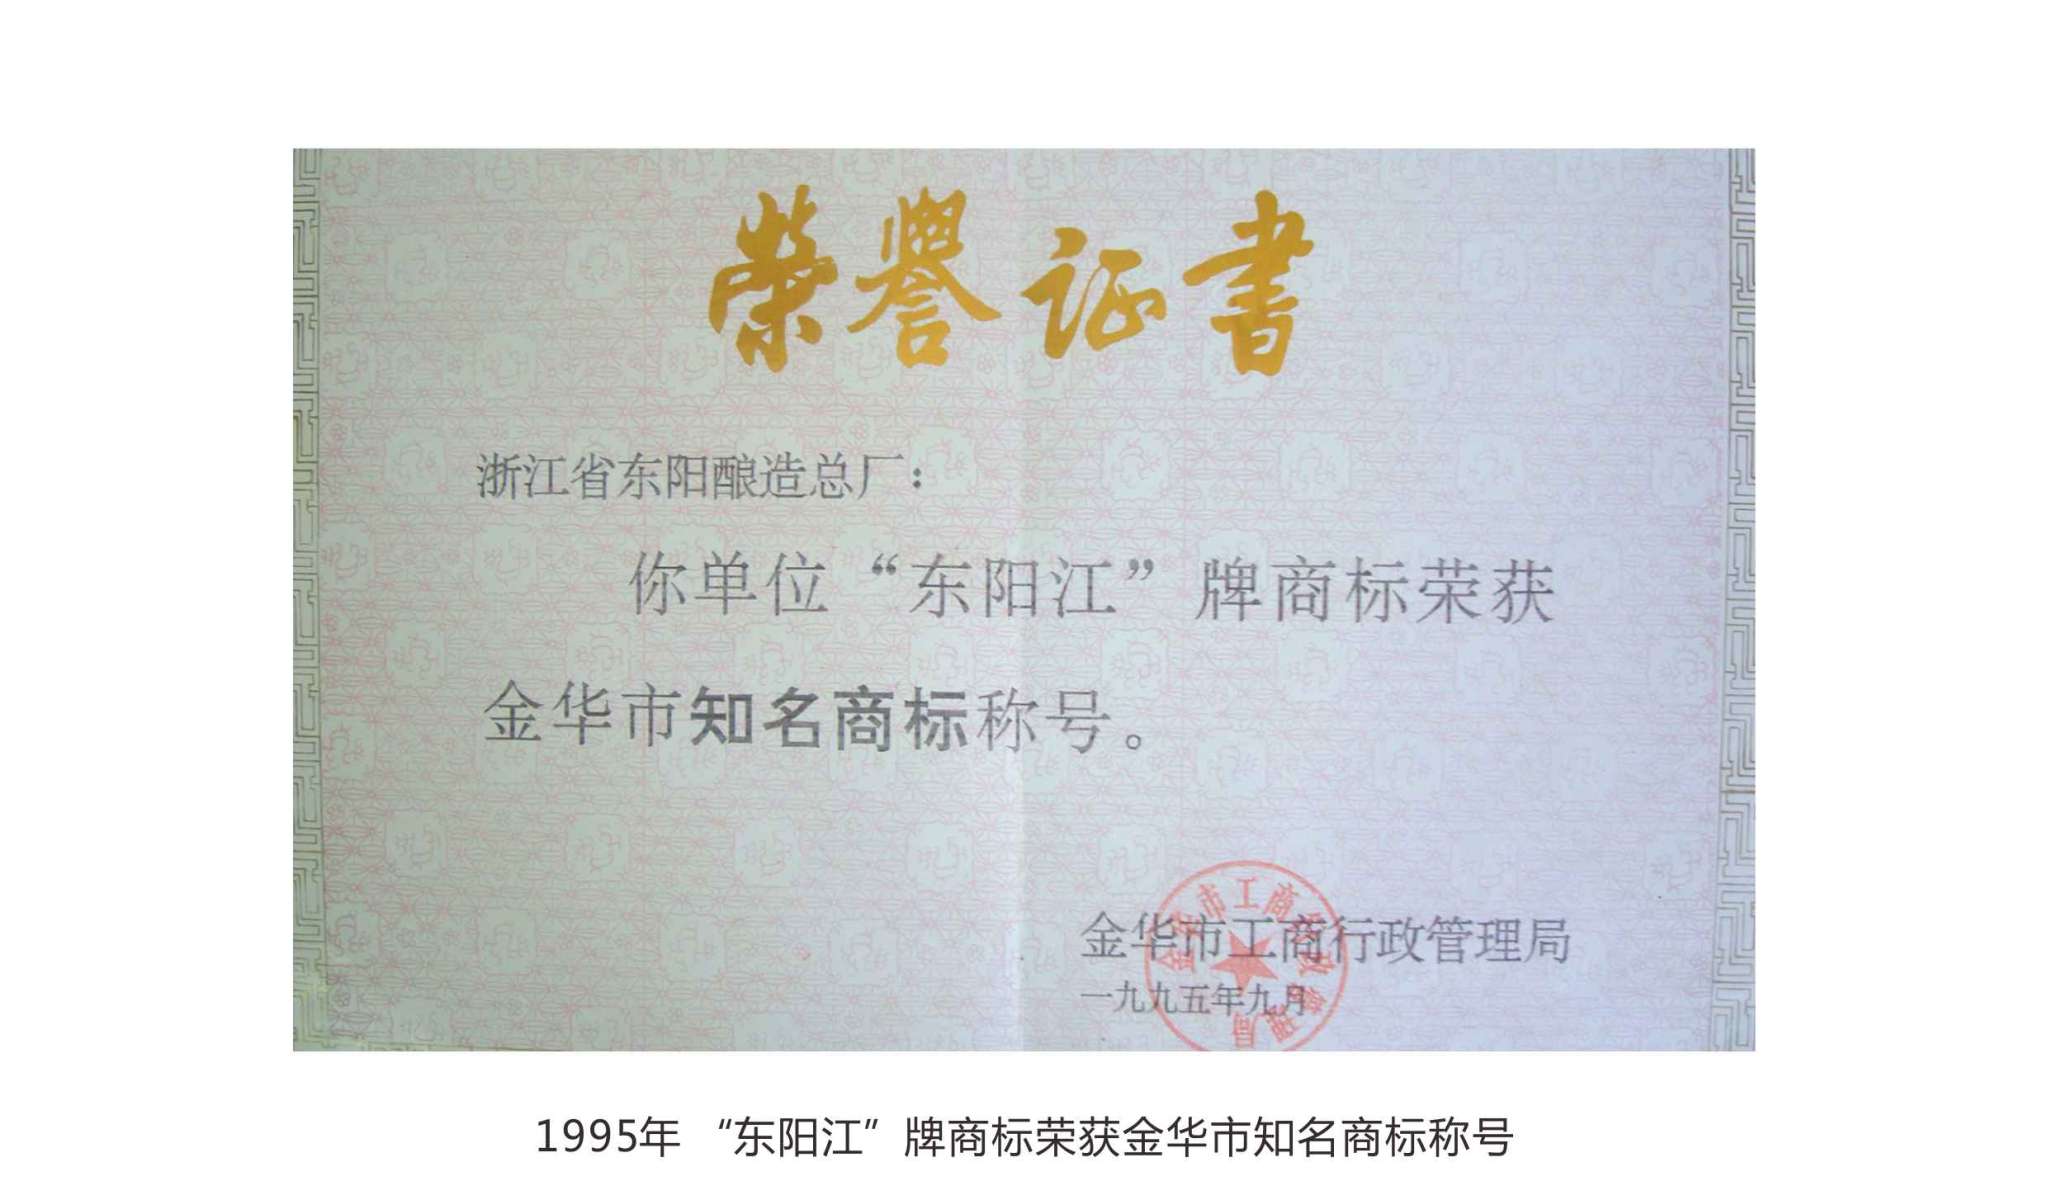 1995年 “東陽江”牌商標榮獲金華市知名商標稱號